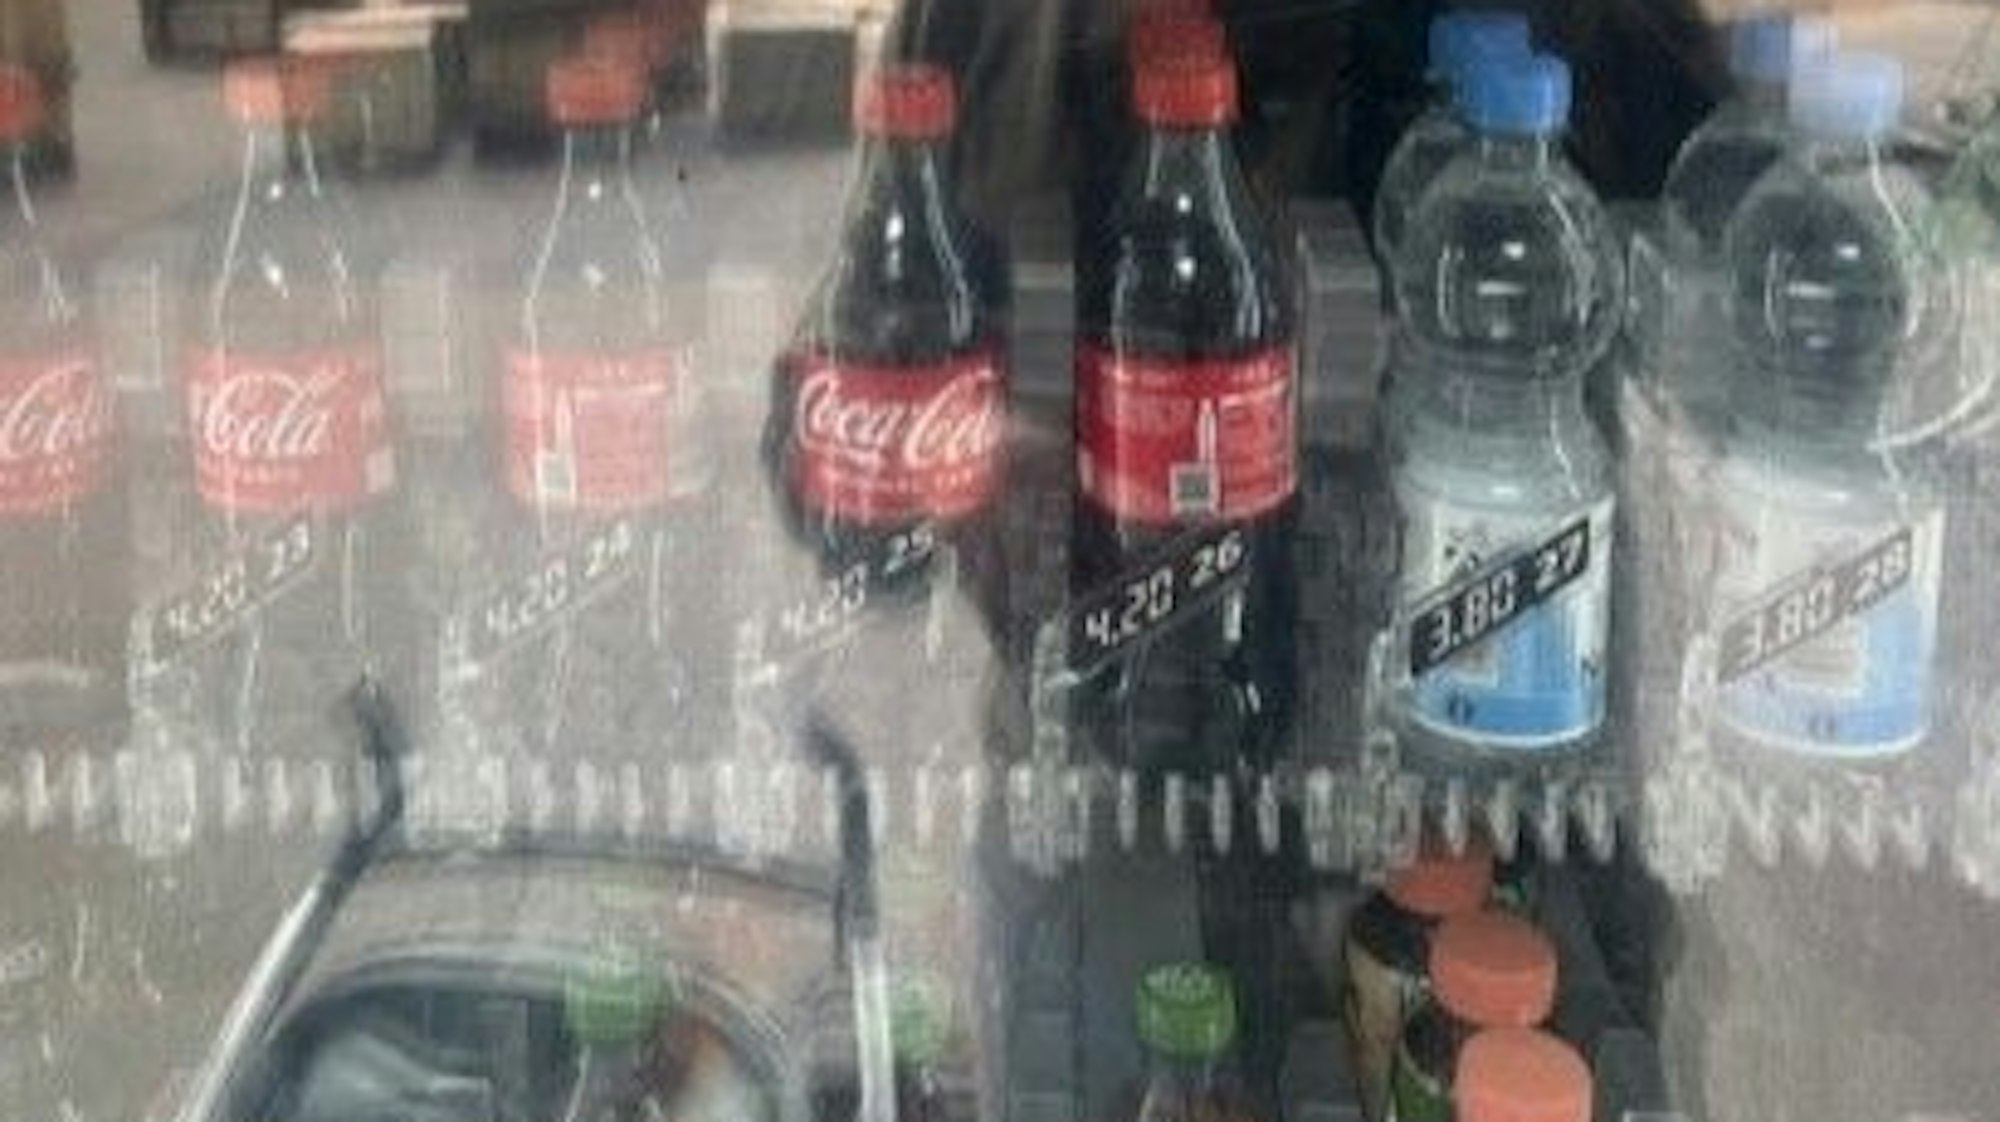 Blick in einen Getränkeautomaten, es sind Cola- und Wasserflaschen zu sehen.